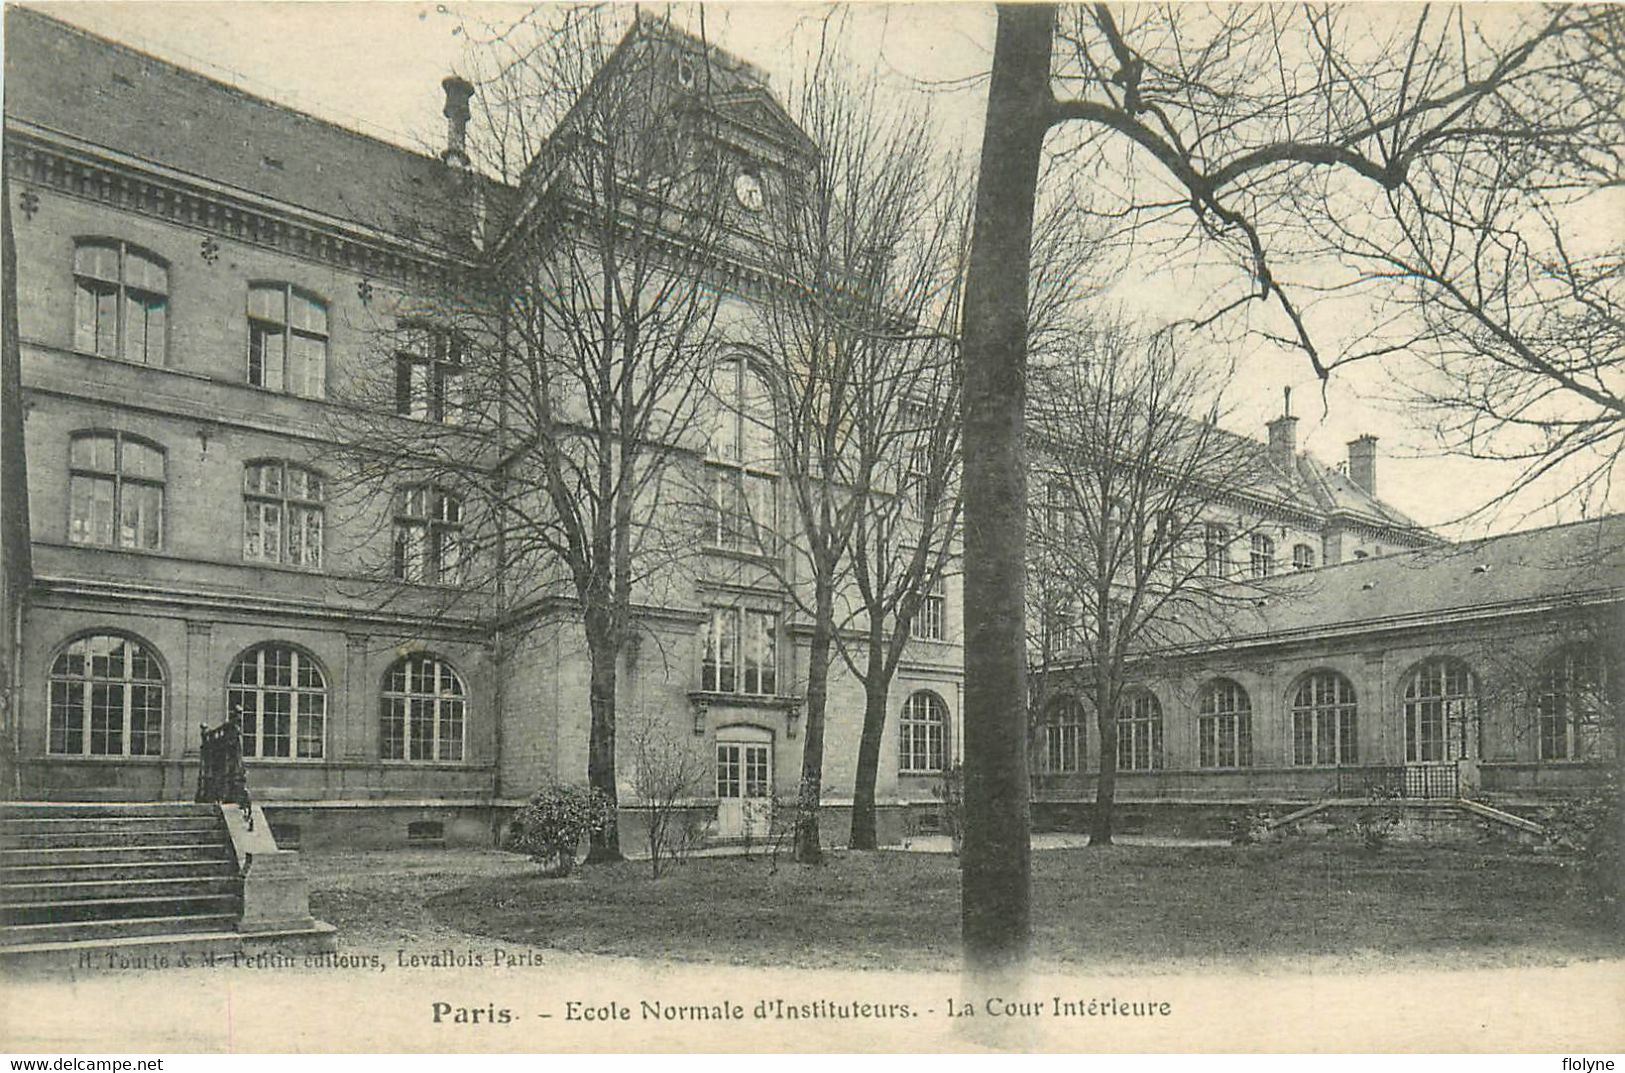 paris - 16ème arrondissement - 7 cpa - école normale d'instituteurs - scolaire - salles et bâtiments